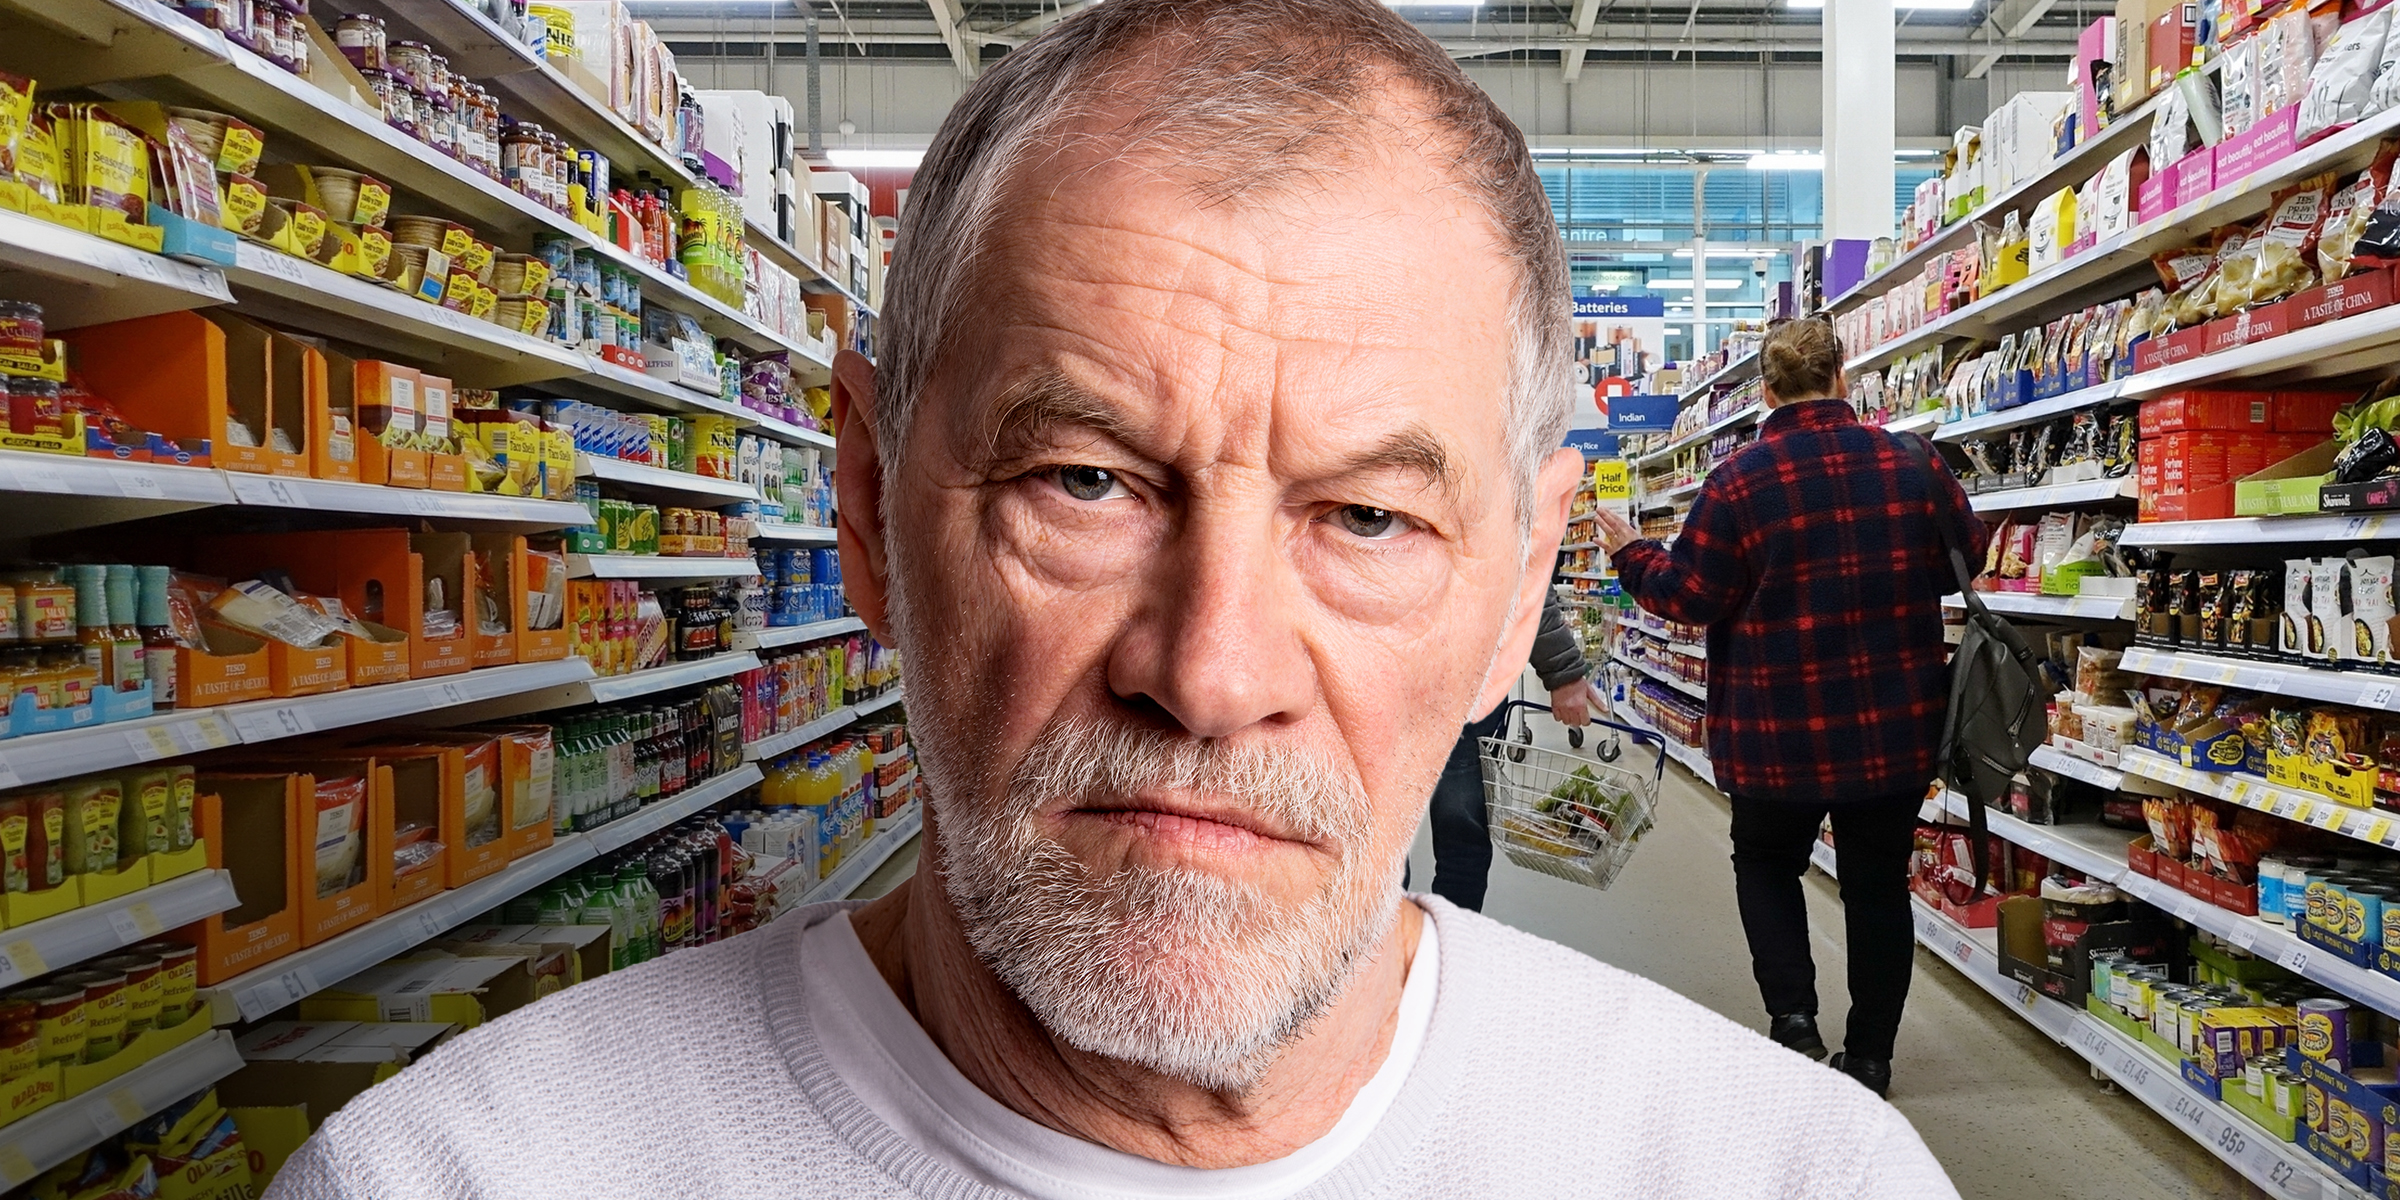 Un hombre enfadado fotografiado en unos grandes almacenes | Fuente: Shutterstock